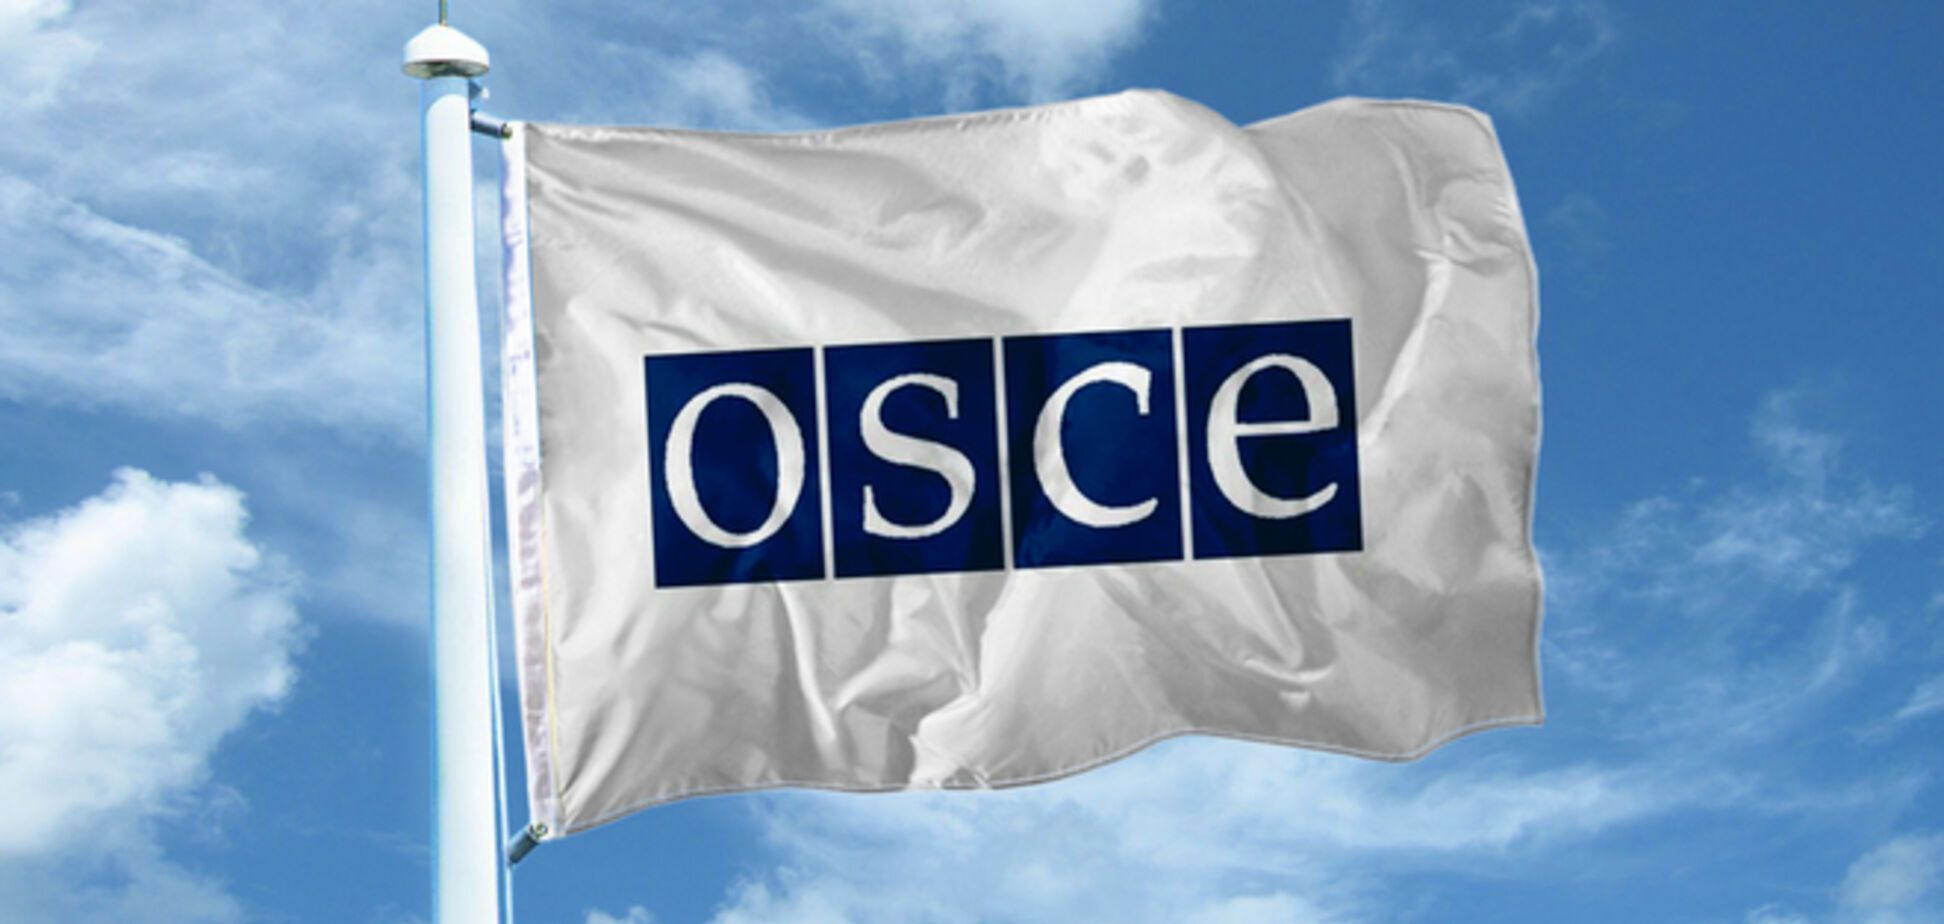 ОБСЕ может отозвать своих наблюдателей из Украины - СМИ